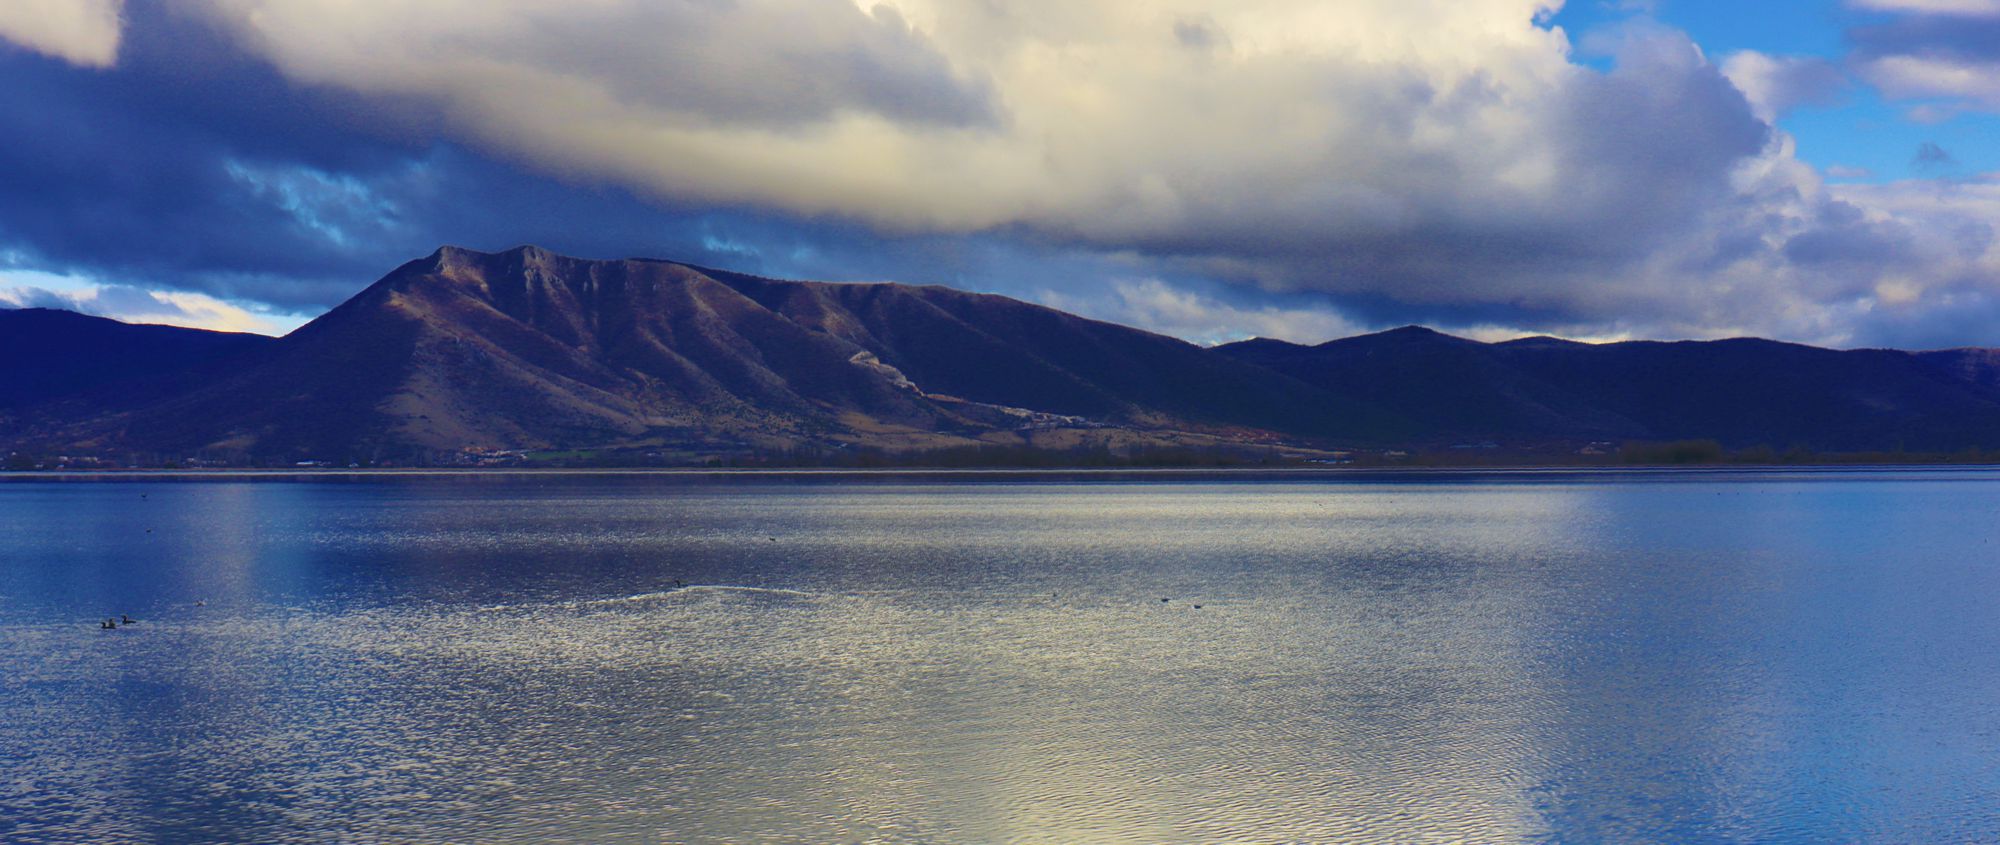 Τα βουνά της Καστοριάς: Ο όγκος Ίστακος στα νότια της λίμνης Ορεστιάδα